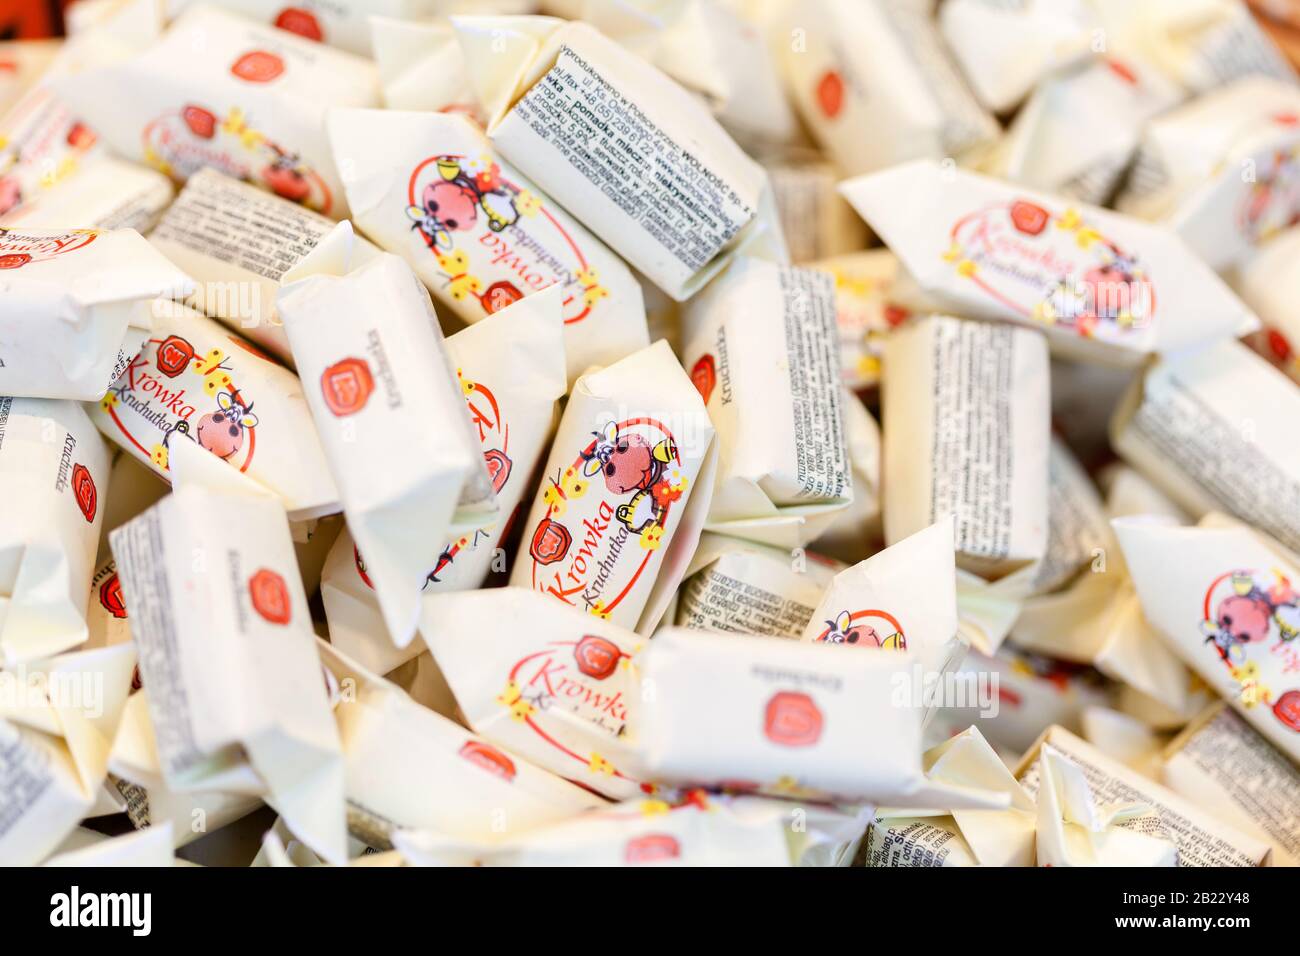 Un tas de petites bonbons polonais fudge traditionnels emballés dans la macro de livre blanc, closeup. Beaucoup de friandises sucrées, surface de récipient de fudge, vue de dessus Banque D'Images